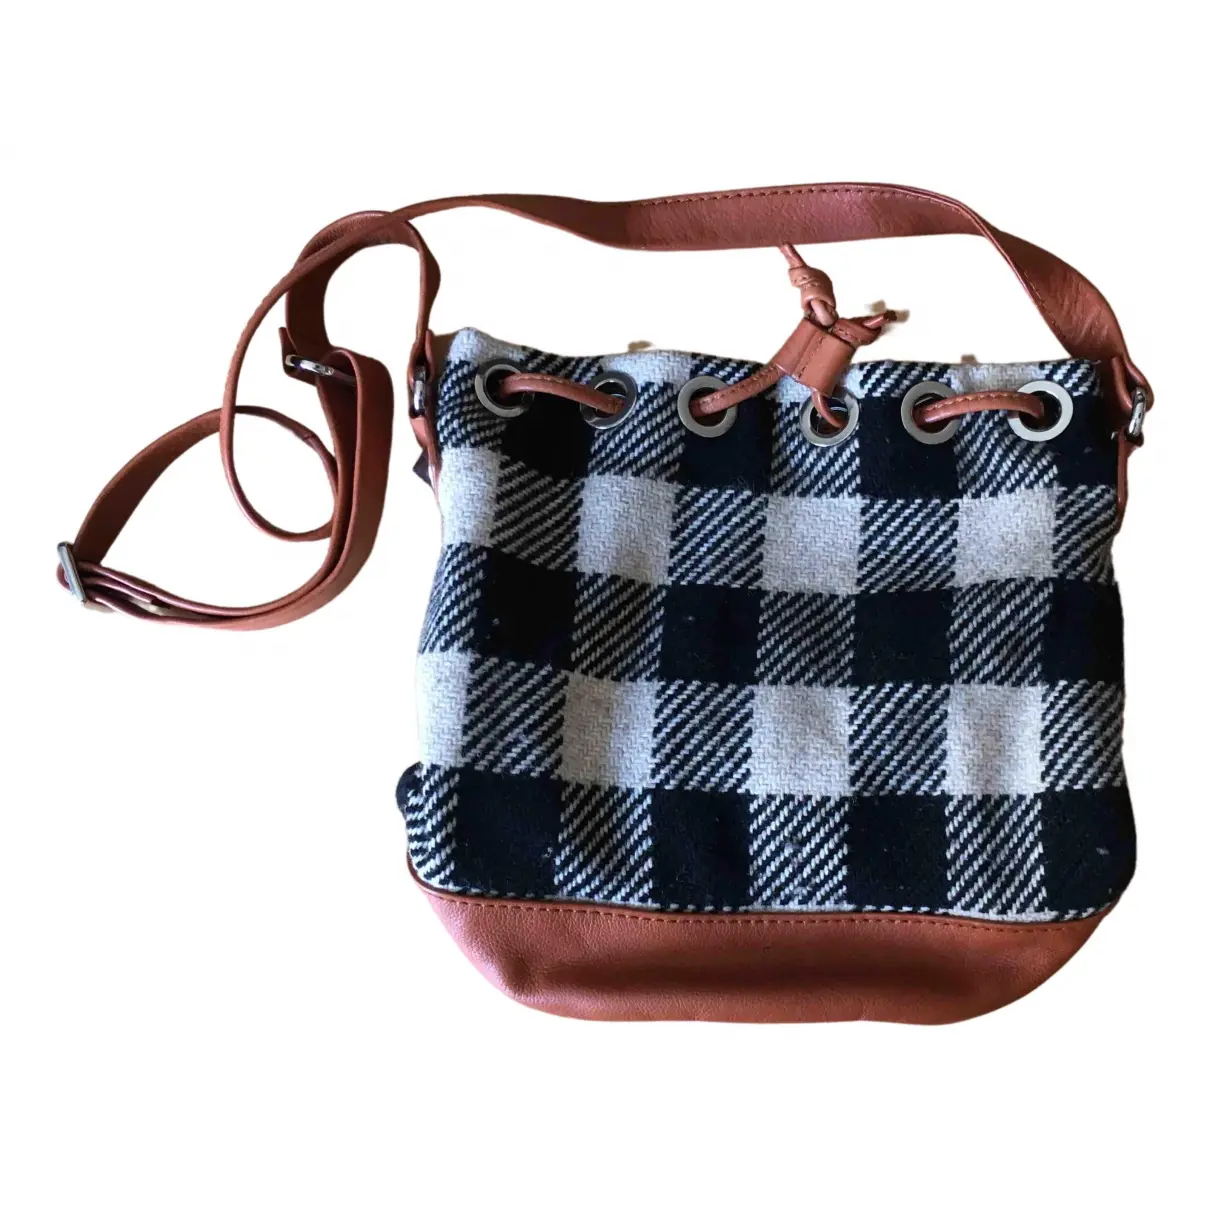 Wool crossbody bag Sonia by Sonia Rykiel